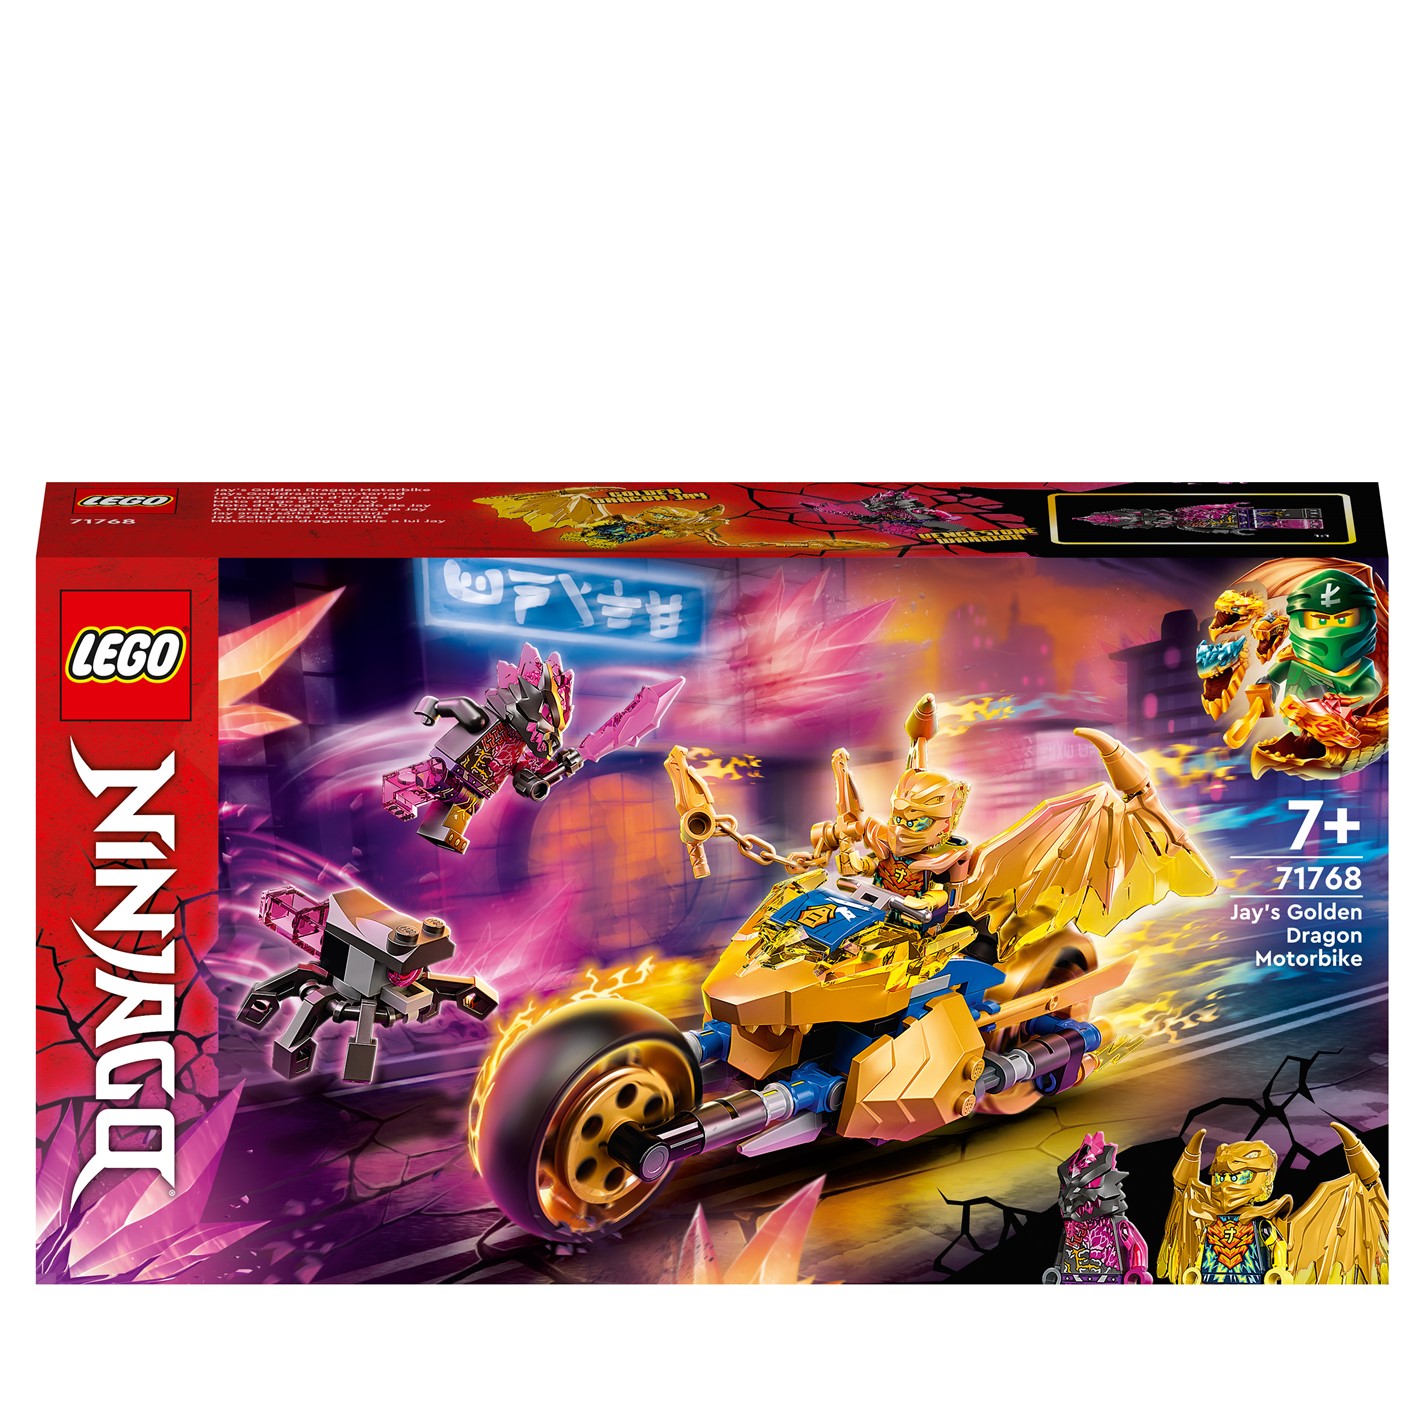 LEGO NINJAGO Jays auriu Dragon Motorbike Toy 71768